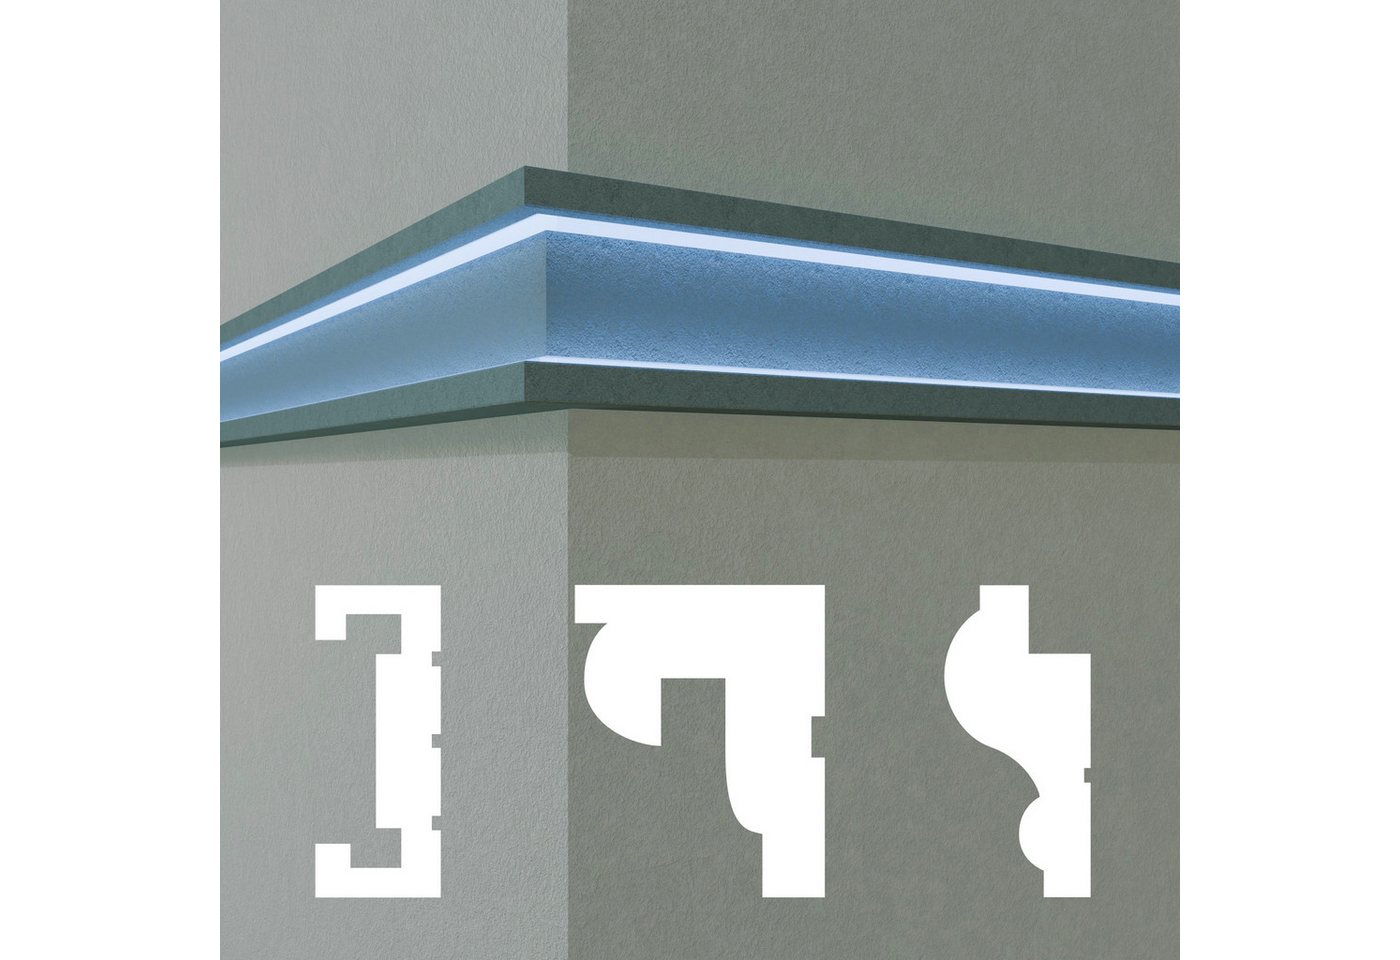 Hexim Stuckleiste DLED-10, Maxi-Sparpaket, LED Fassadenprofil aus EPS - Indirekte Beleuchtung mit Fassaden Stuckleisten - (DLED-10, 60 x 150 mm, 12 Meter / 6 Profile) Stuckprofile Fassadenverkleidung außenbereich von Hexim